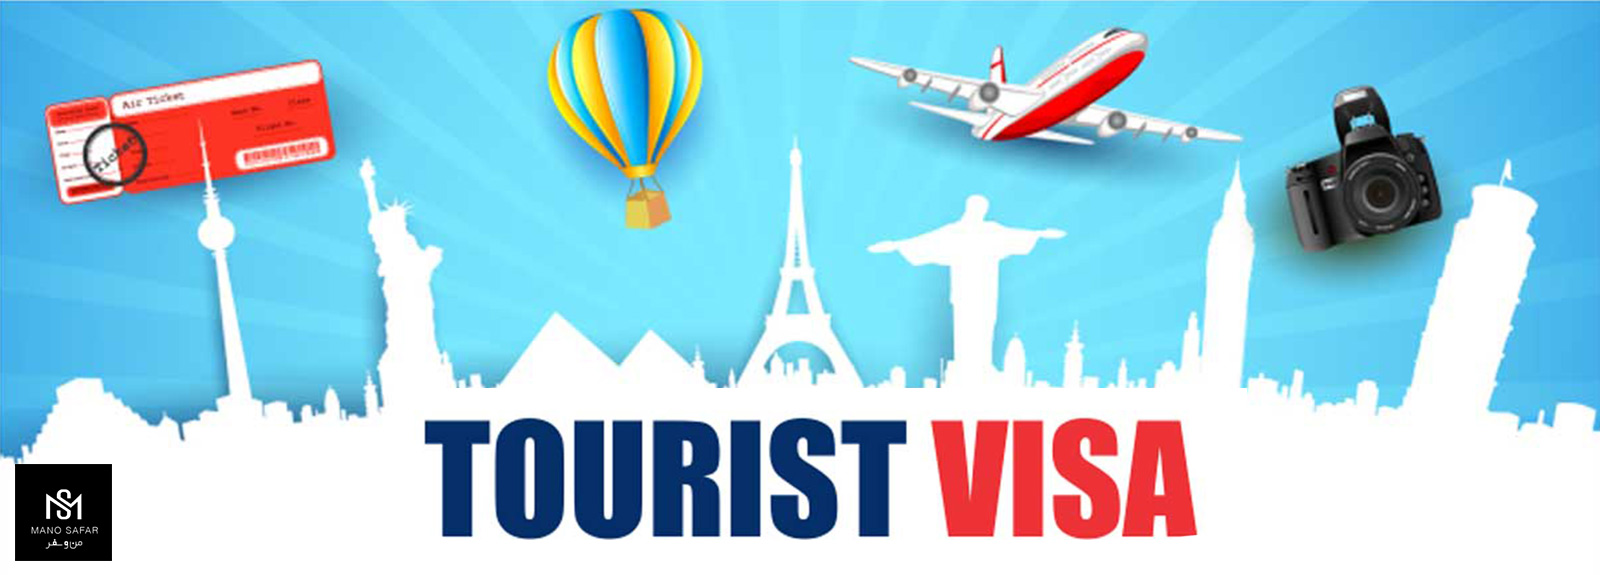 ویزای توریستی هدفمند چیست؟ (شرایط اخذ و قوانین)(AIM Tourist Visa )